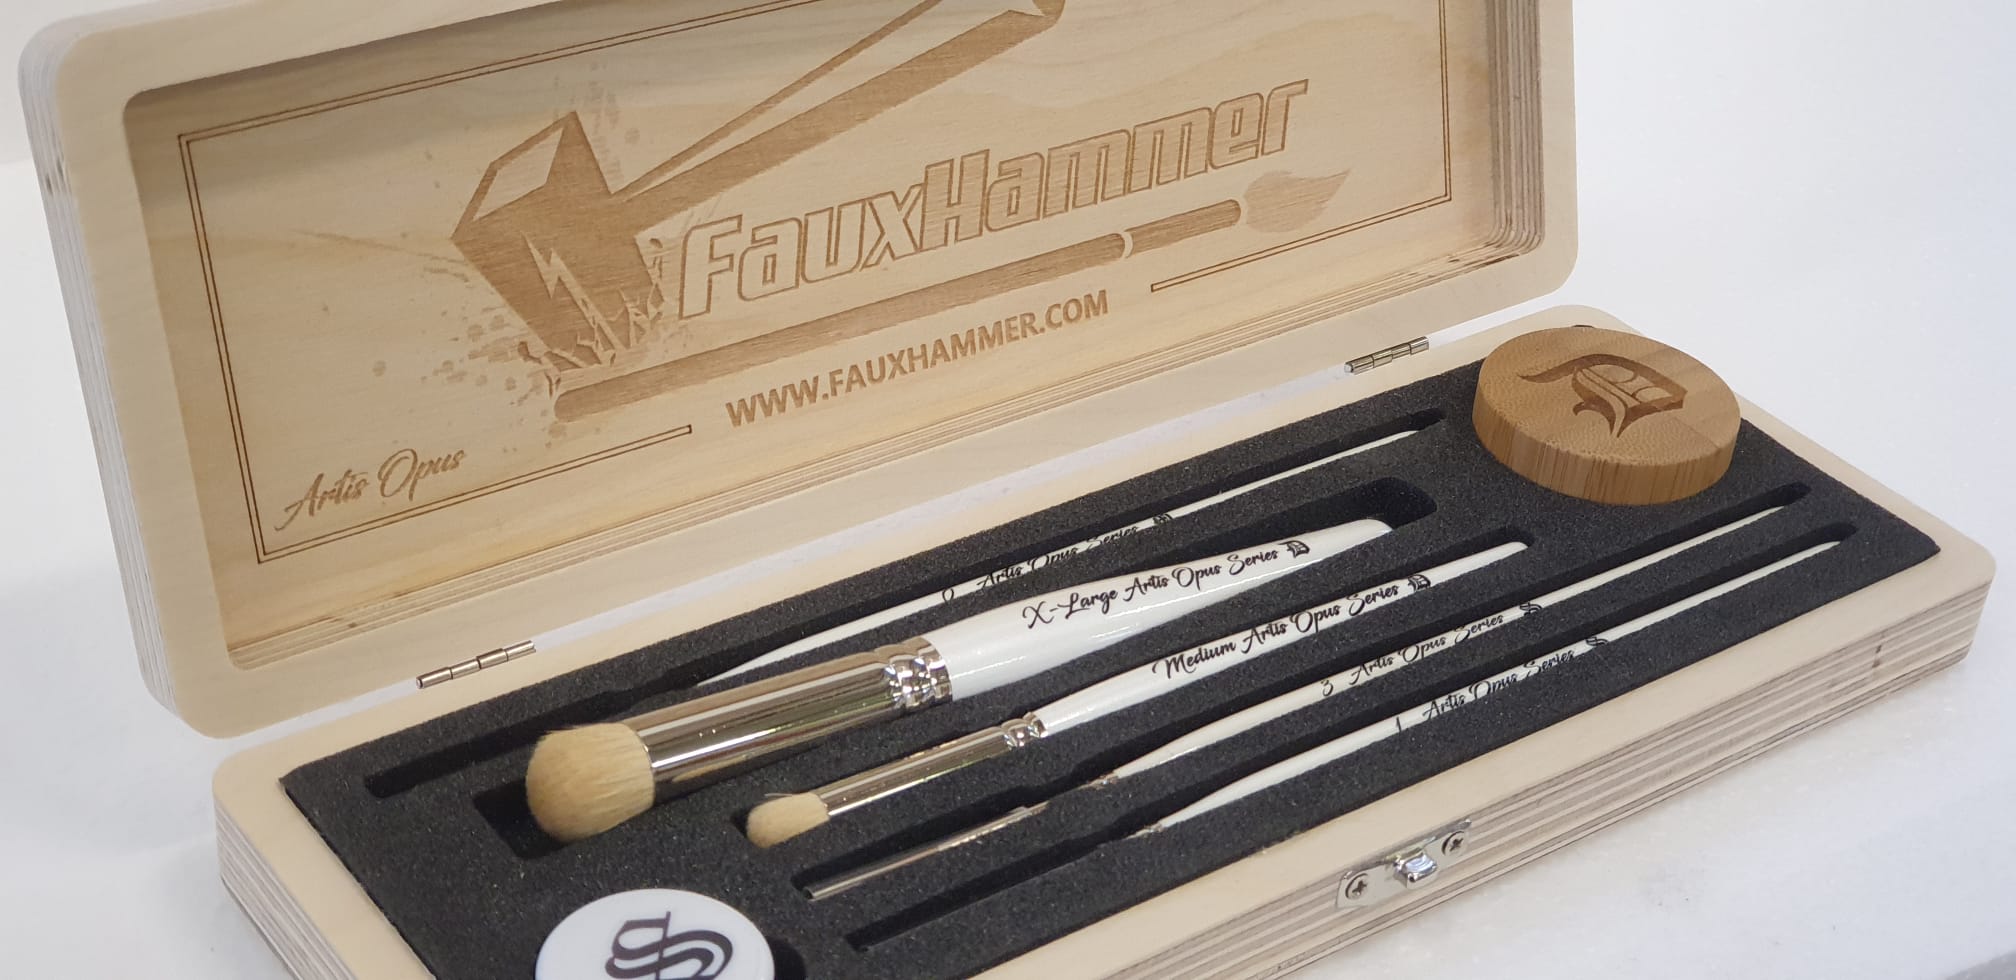 Fauxhammer Mixed Brush Set (5-Brush DELUXE) – Artis Opus Store